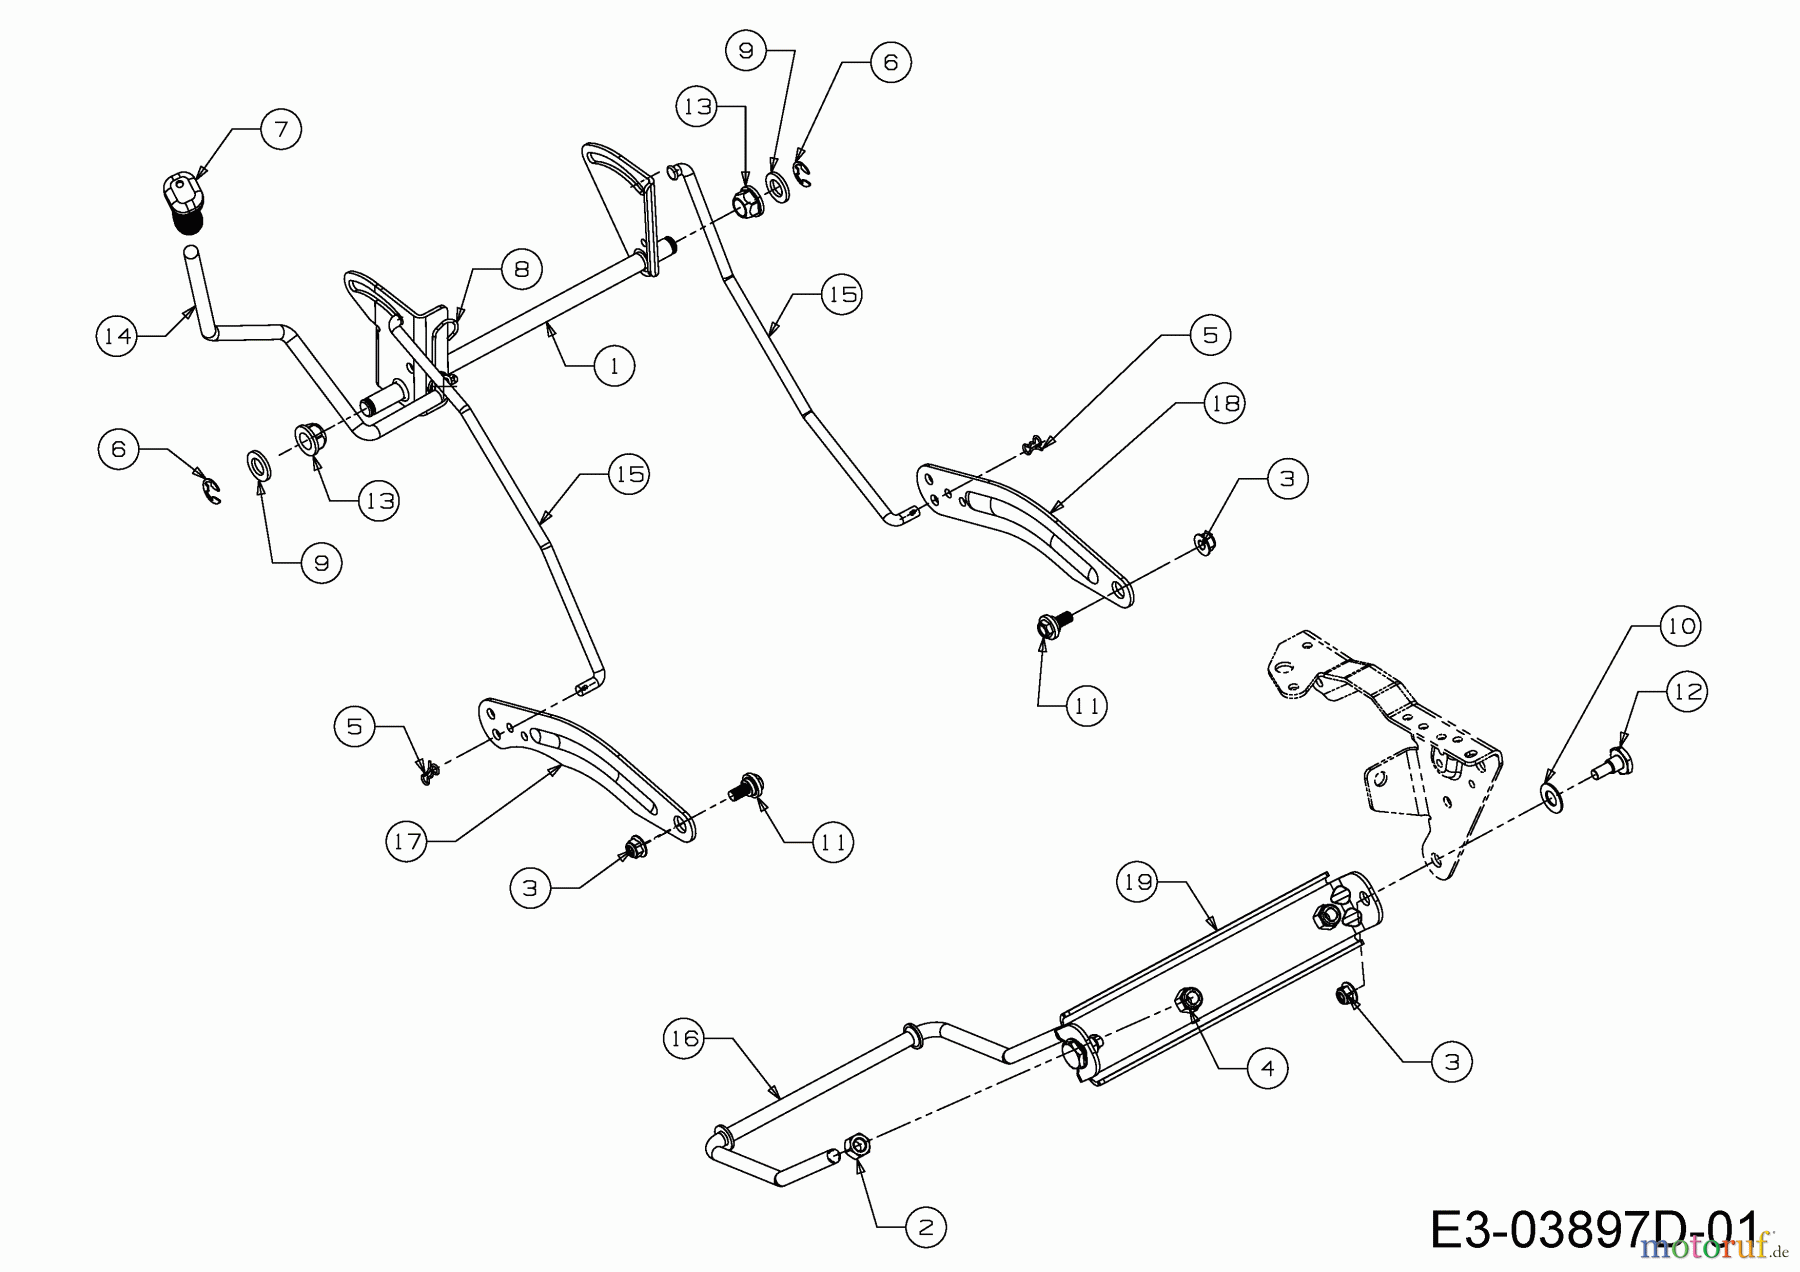  WOLF-Garten Expert Rasentraktoren E 13/92 T 13H2765E650  (2017) Mähwerksaushebung